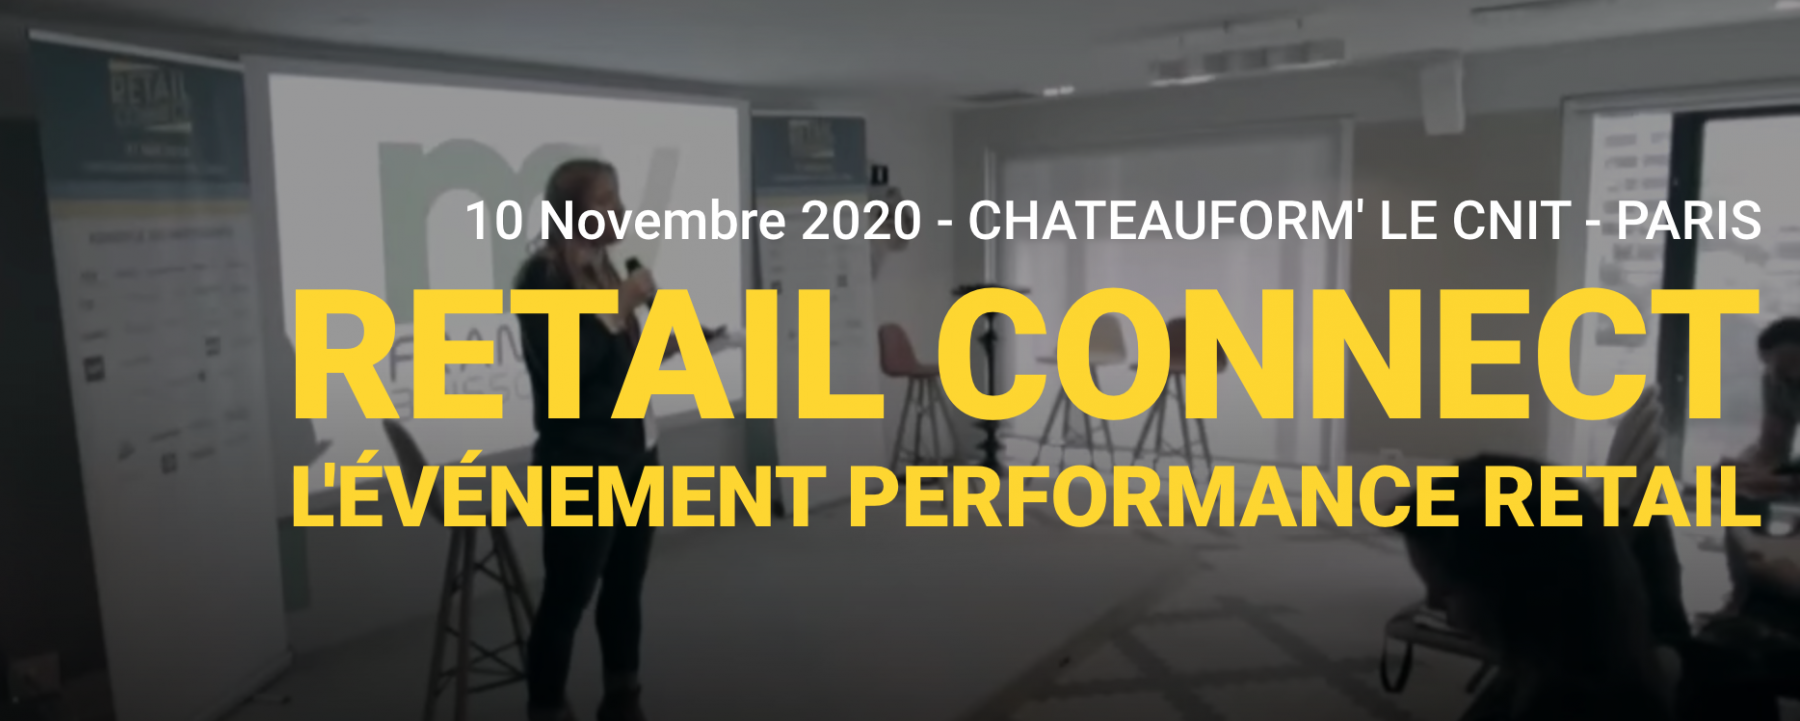 Salon Retail Connect, organisé par Wonke, le 10 novembre 2020